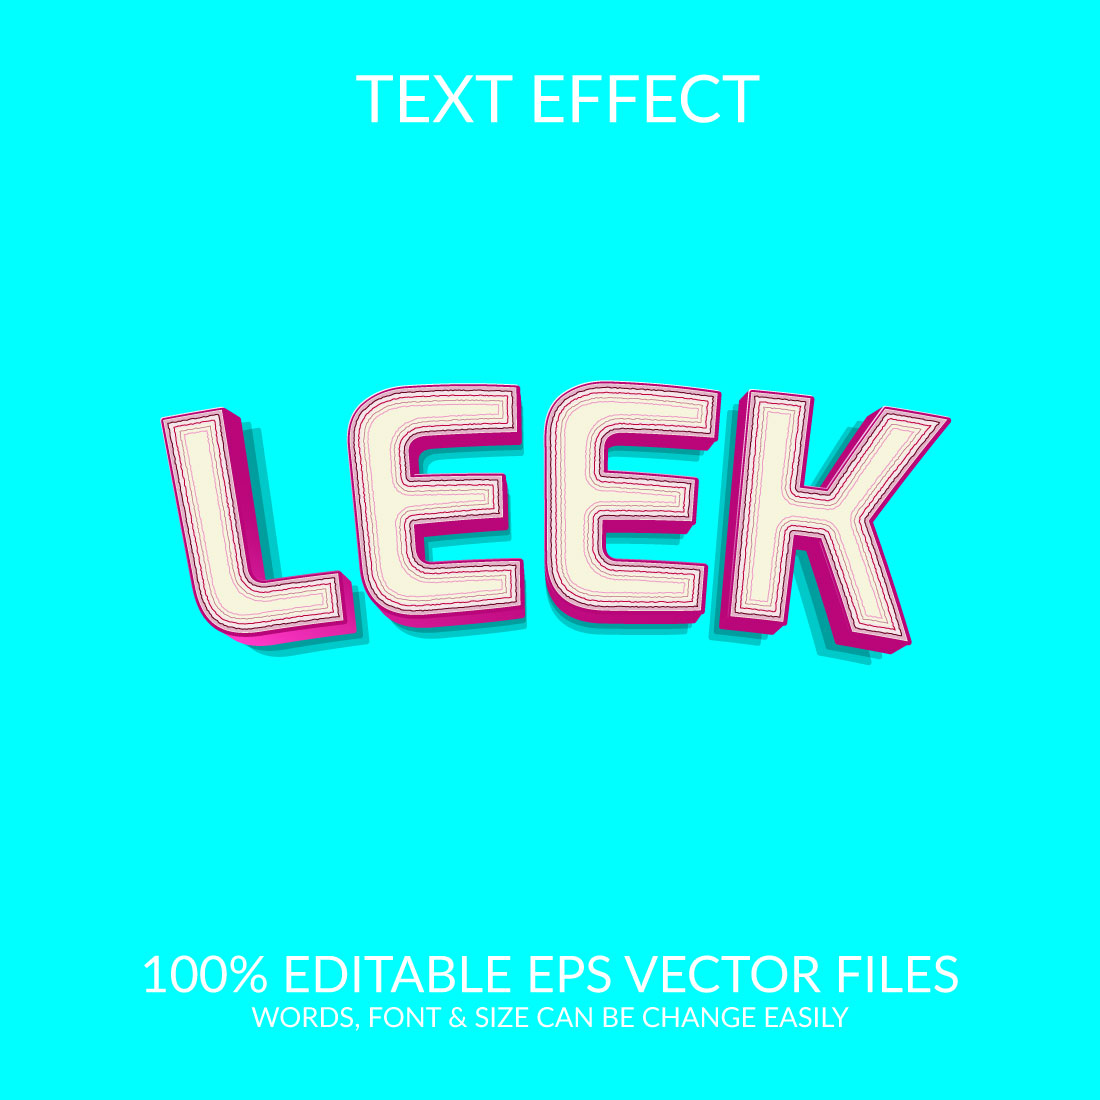 Leek 3d text effect design preview image.